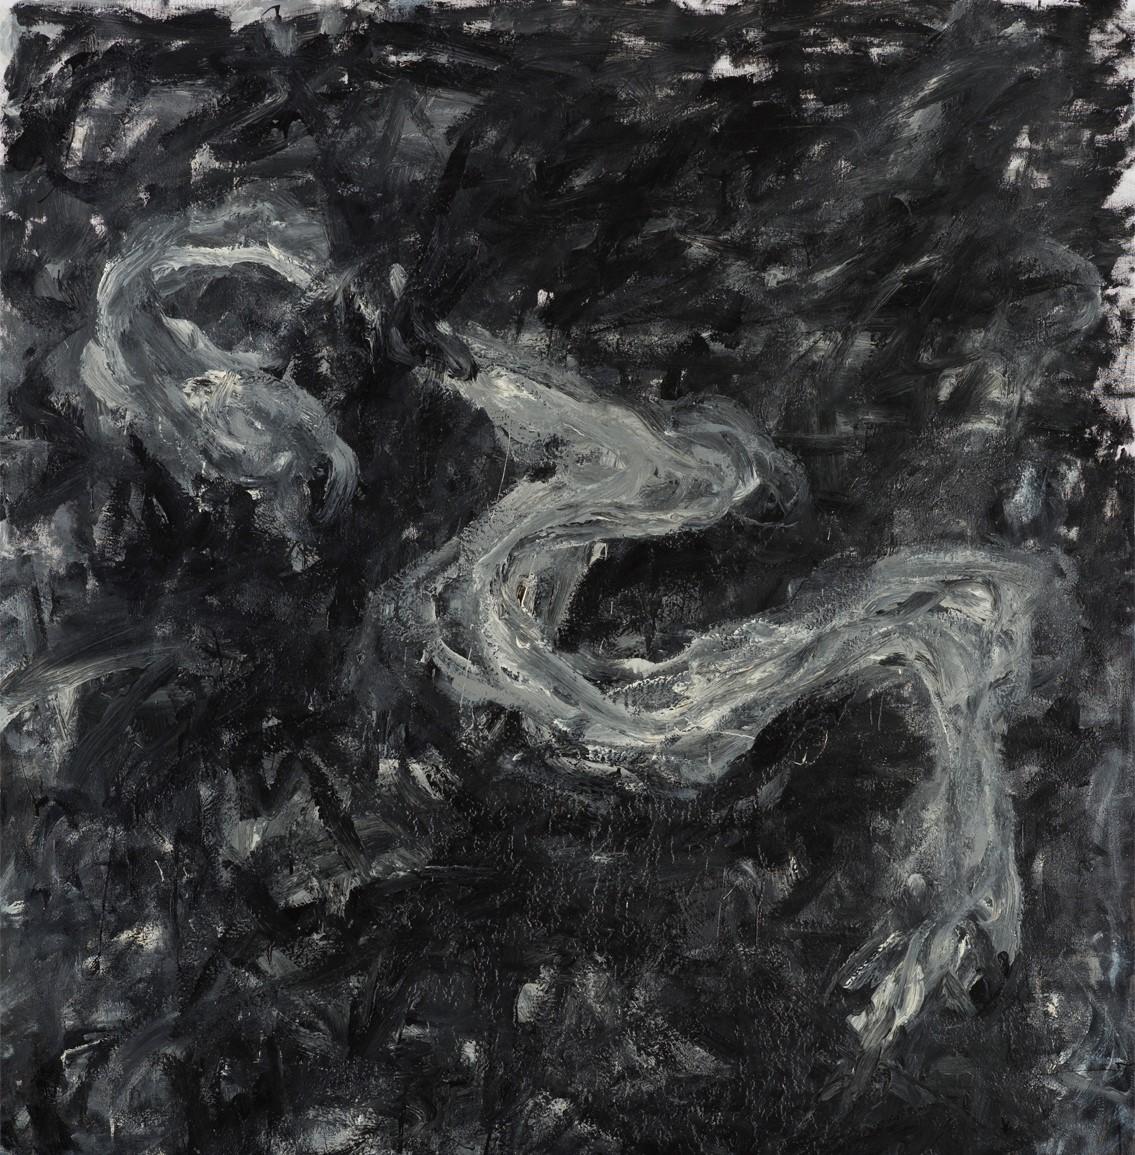 Sans titre 05 [Remains of the Remains 05] - Contemporain, abstrait, noir, gris - Expressionnisme abstrait Painting par Zsolt Berszán